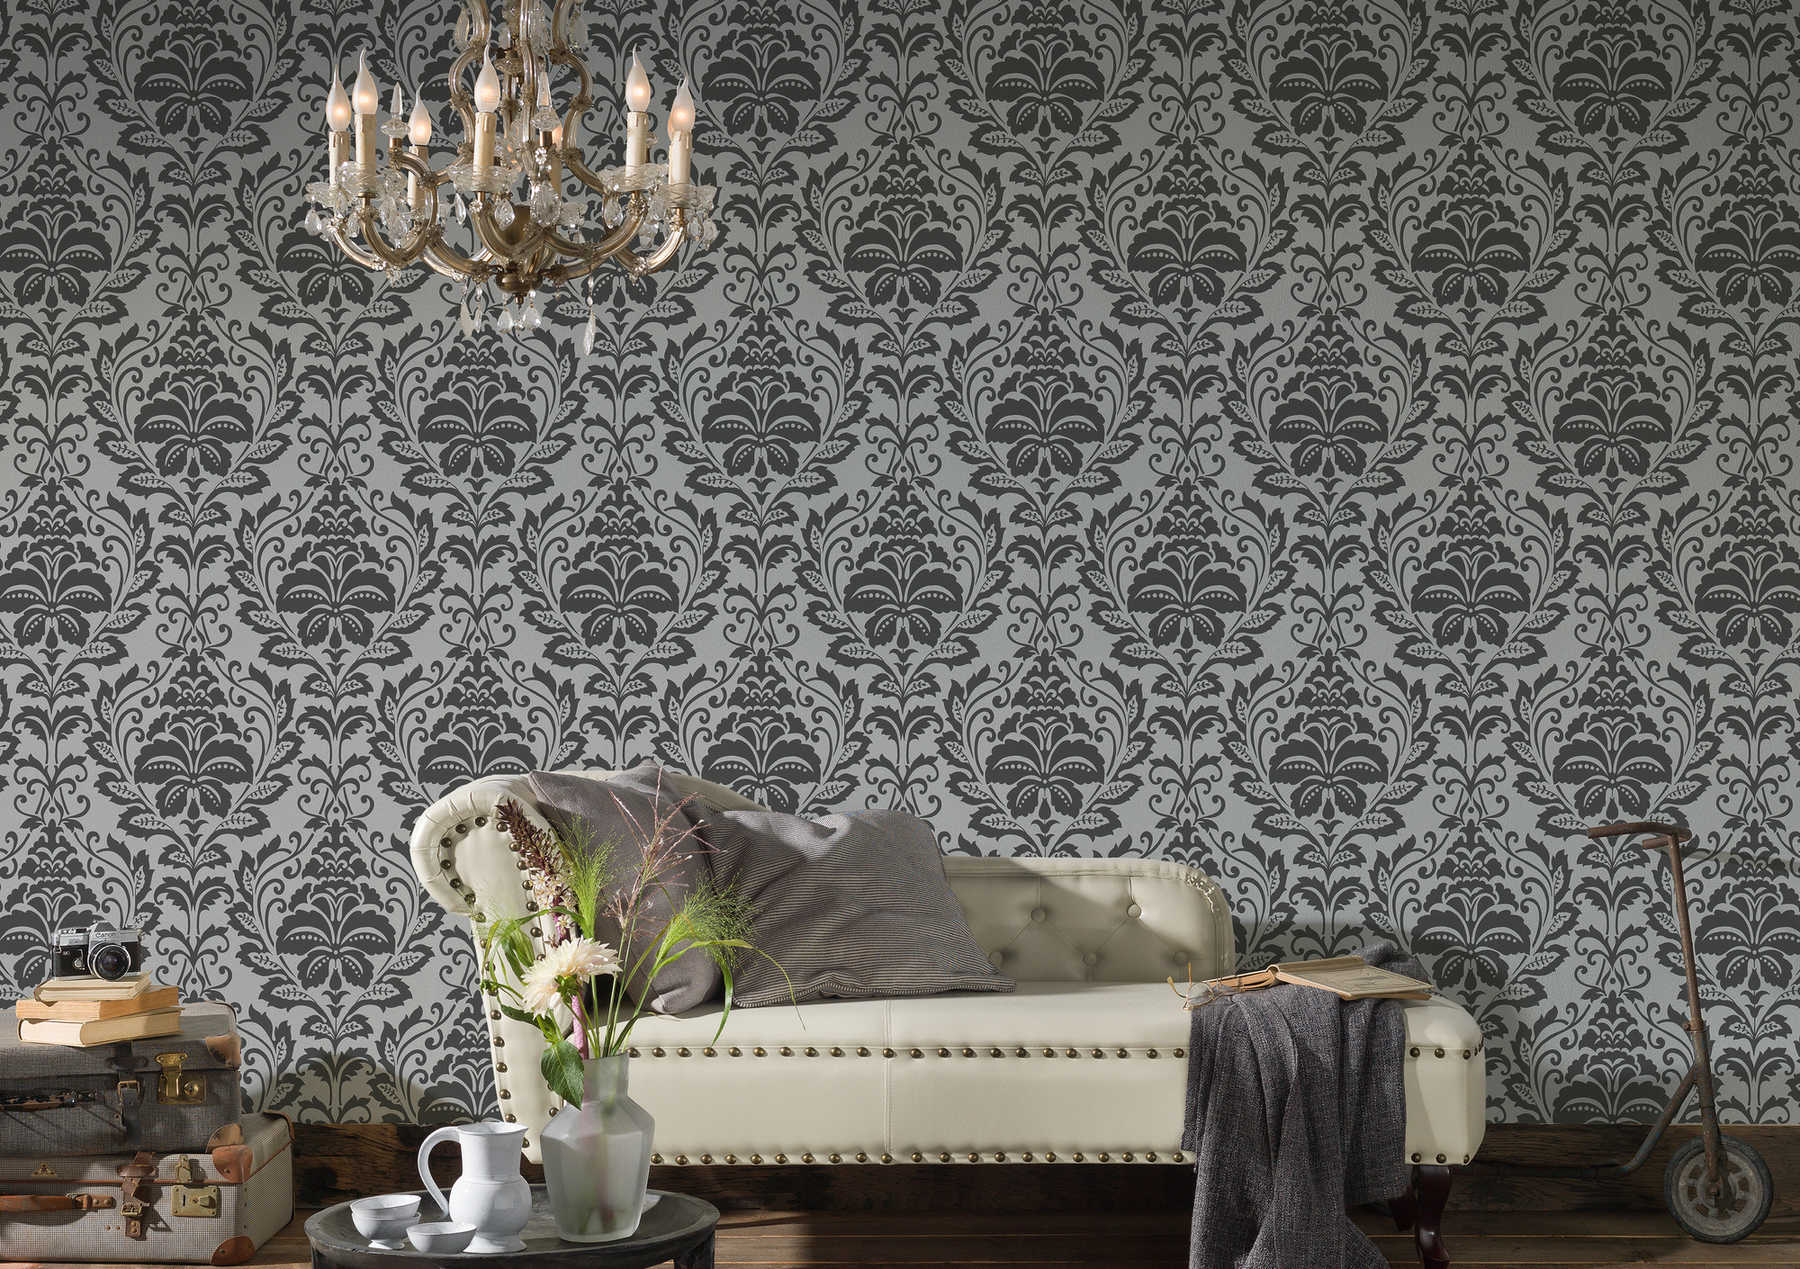             Neo classic ornament wallpaper, floral - grey, black
        